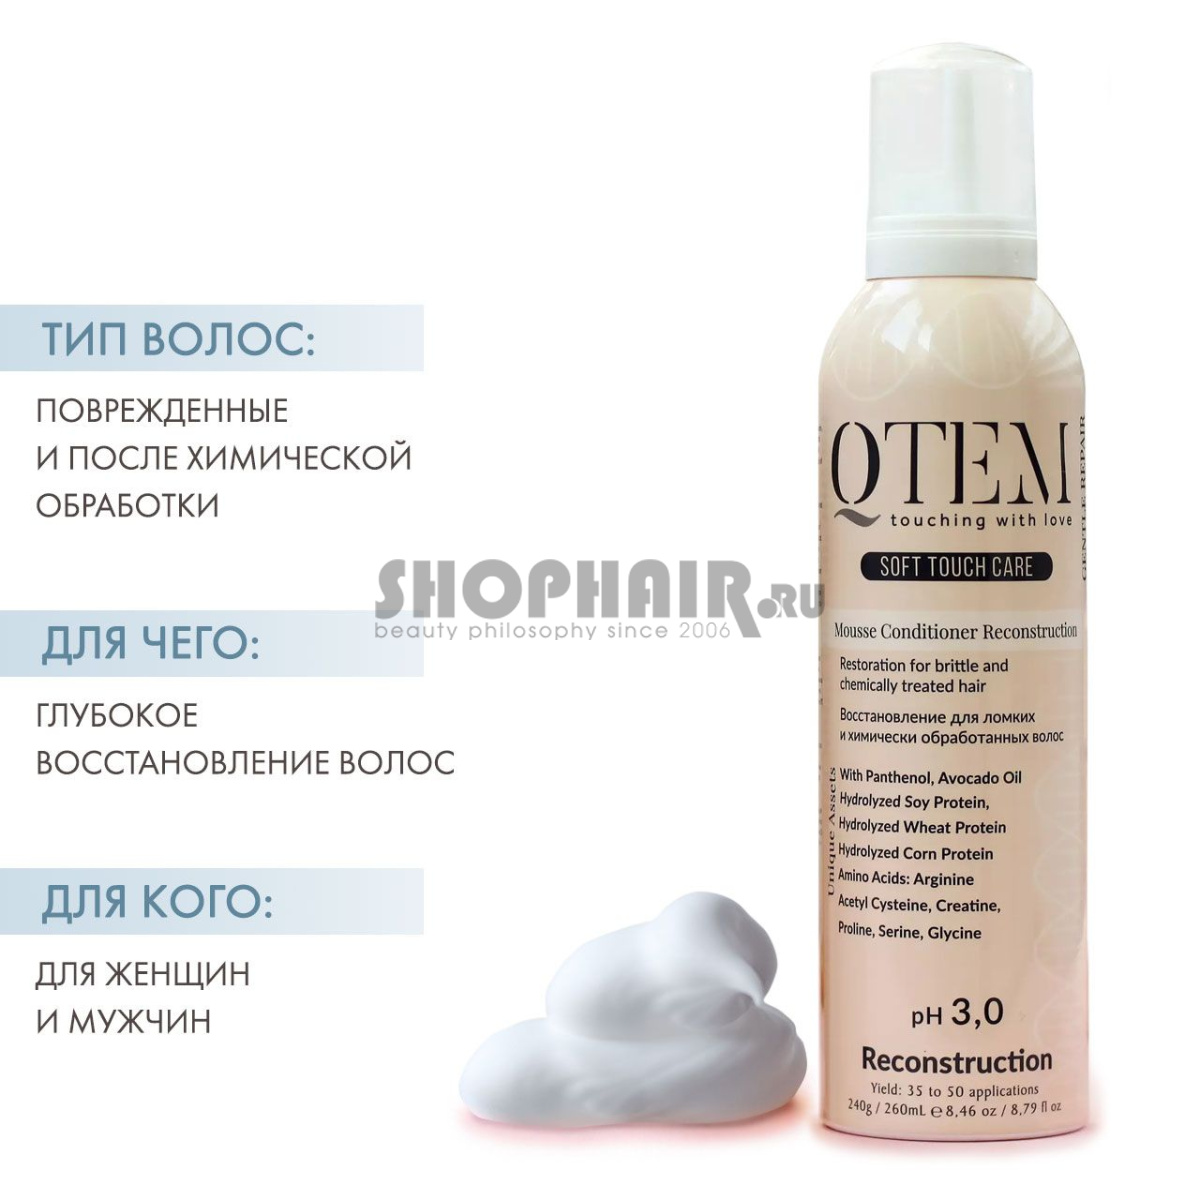 Qtem Soft Touch Care - Протеиновый мусс-кондиционер "Восстановление" для ломких и химически обработанных волос 260 мл Qtem (Испания) купить по цене 1 295 руб.